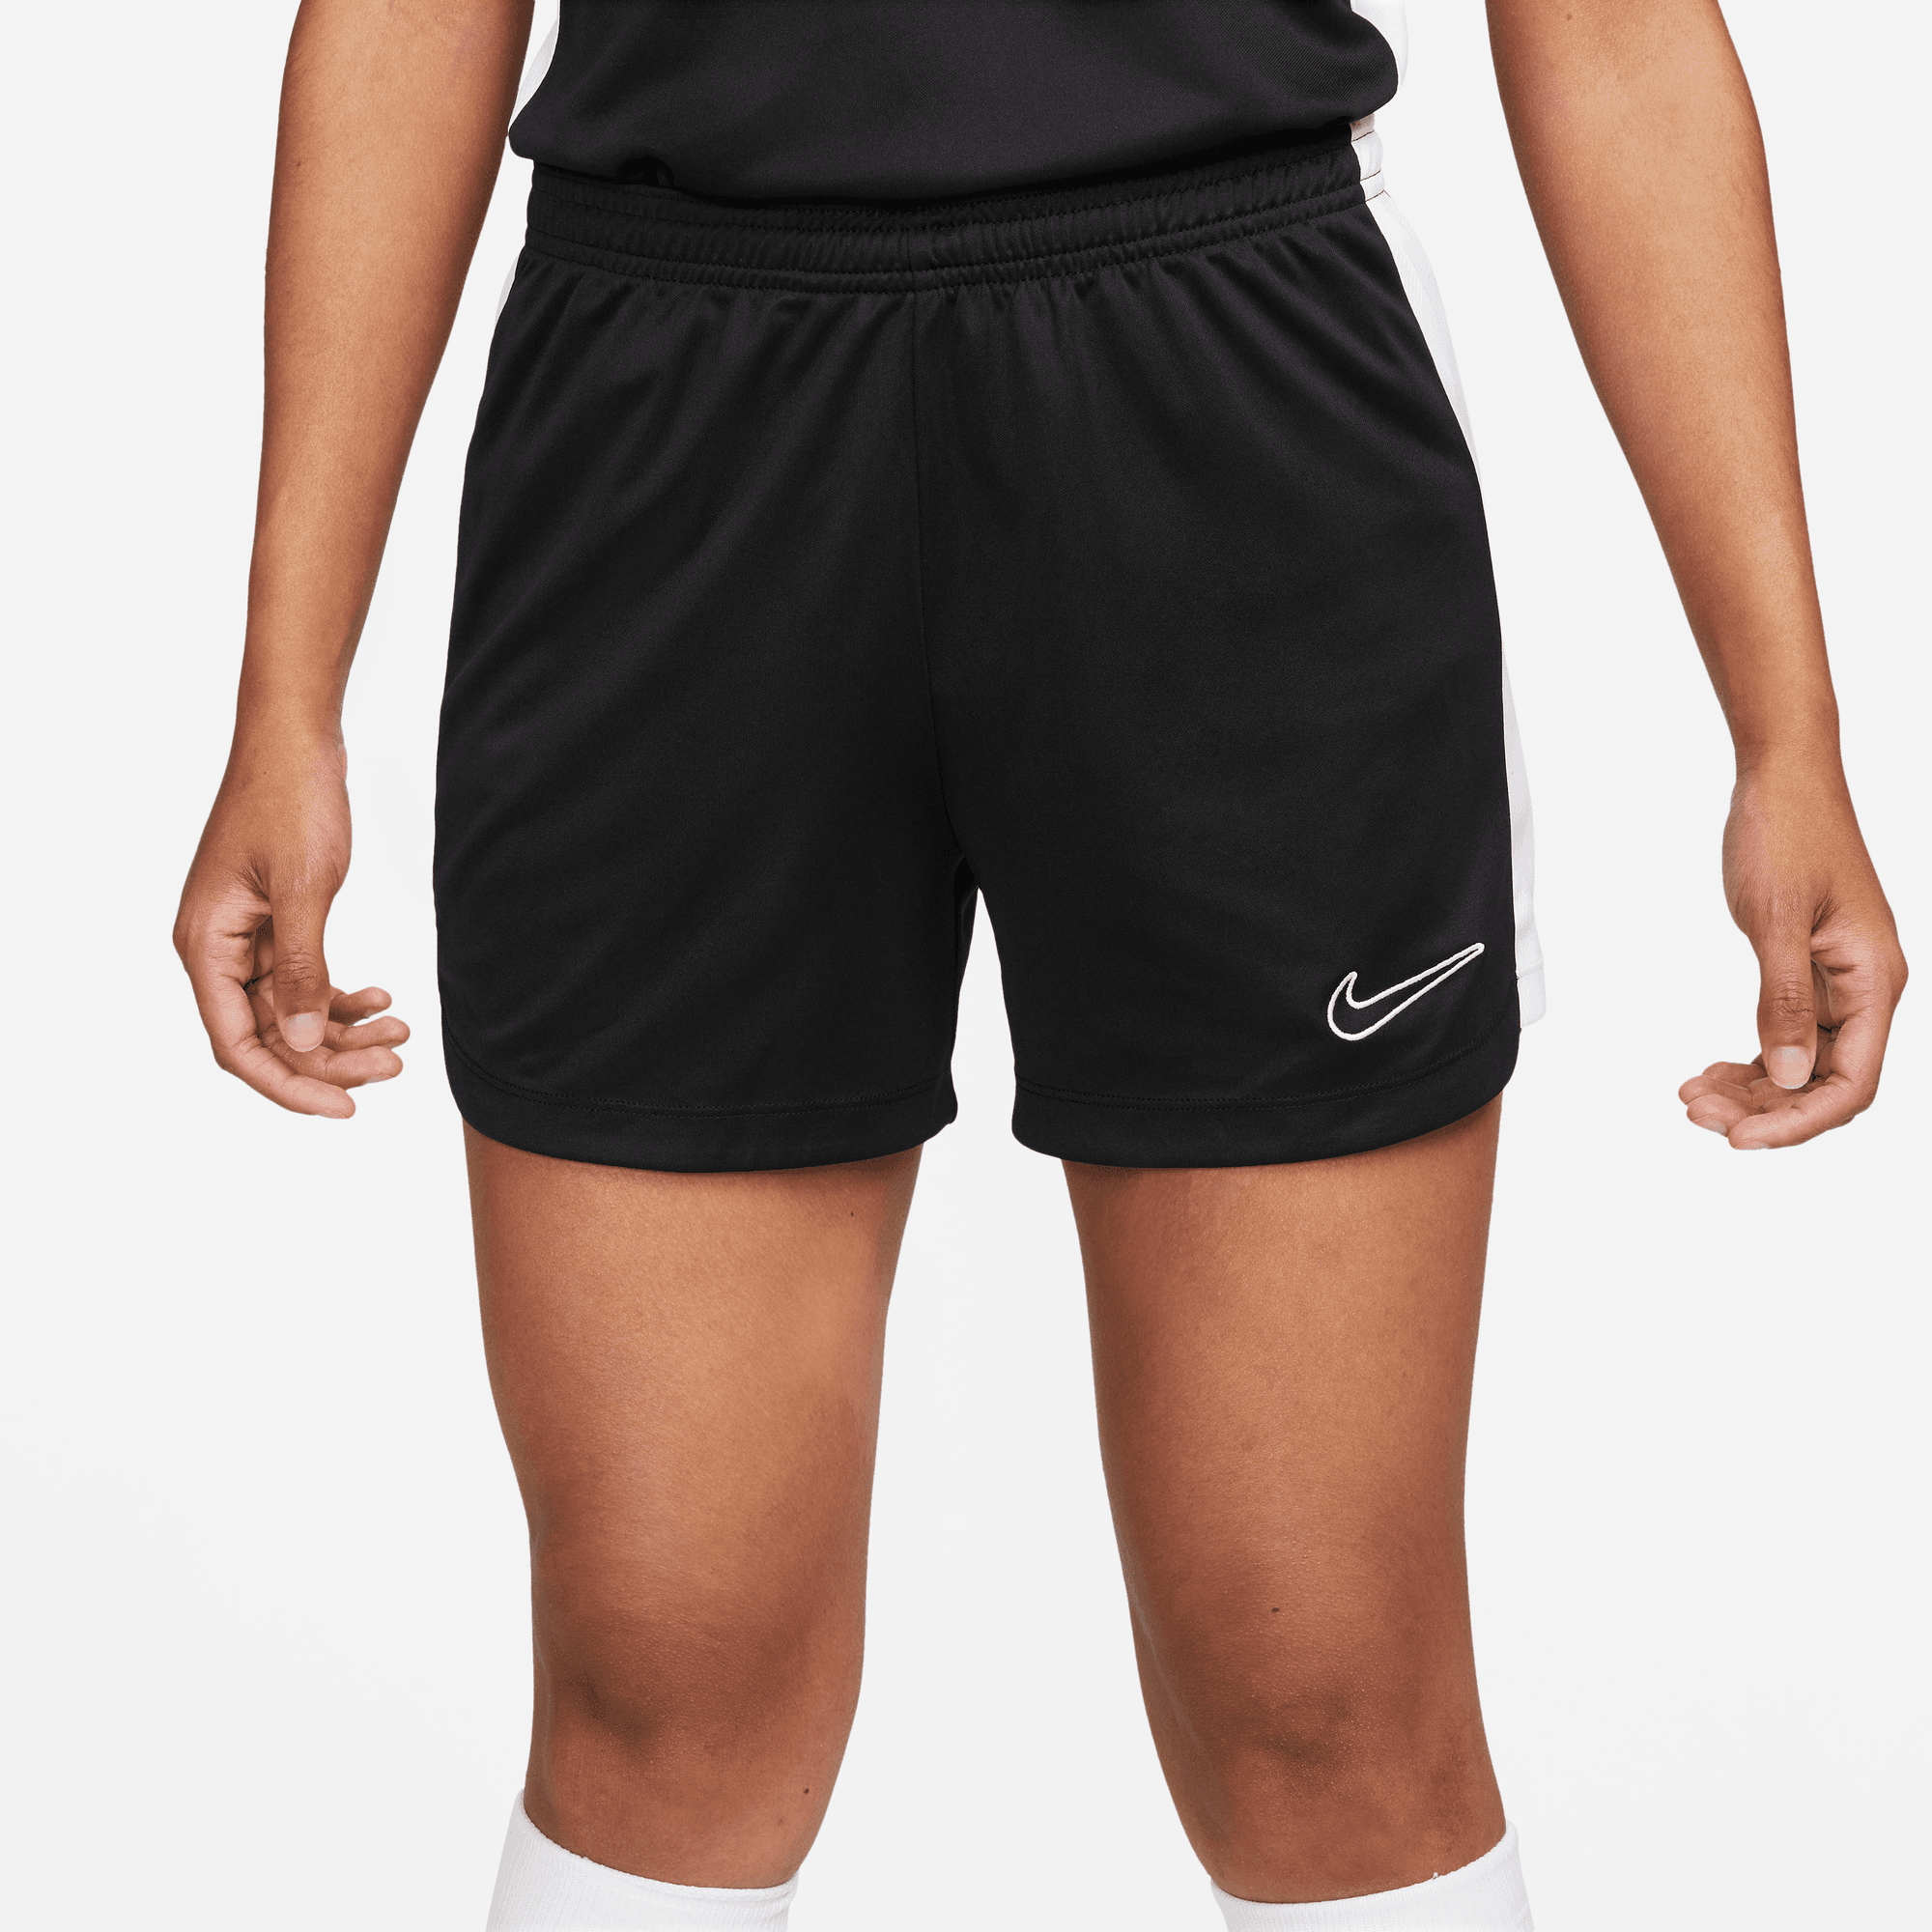 stefanssoccer.com:Nike Women's Academy 23 Short - Black / White